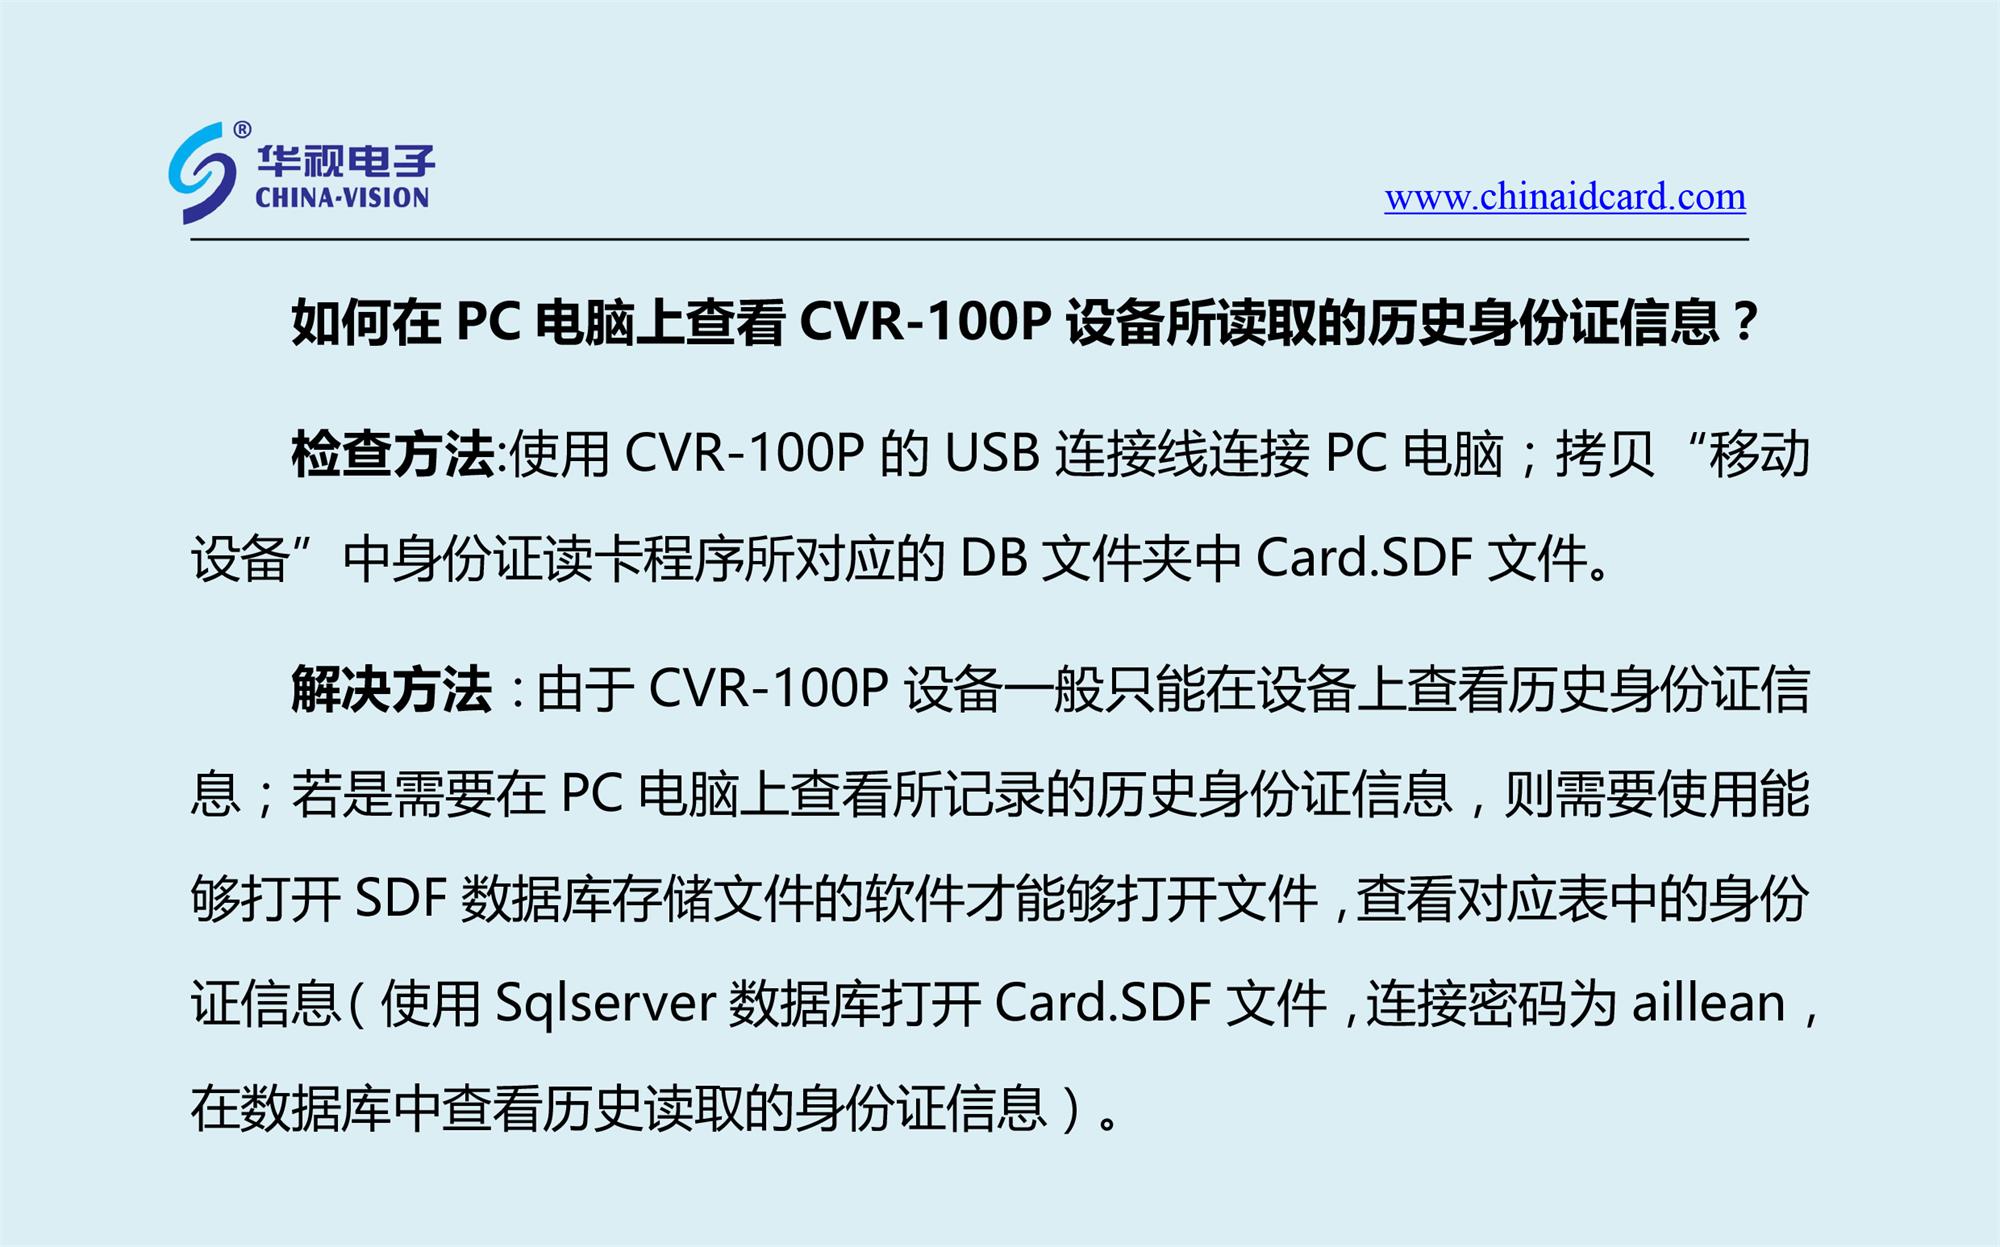 CVR-100P，如何在PC电脑上查看设备所读取的历史身份证信息？-1.jpg